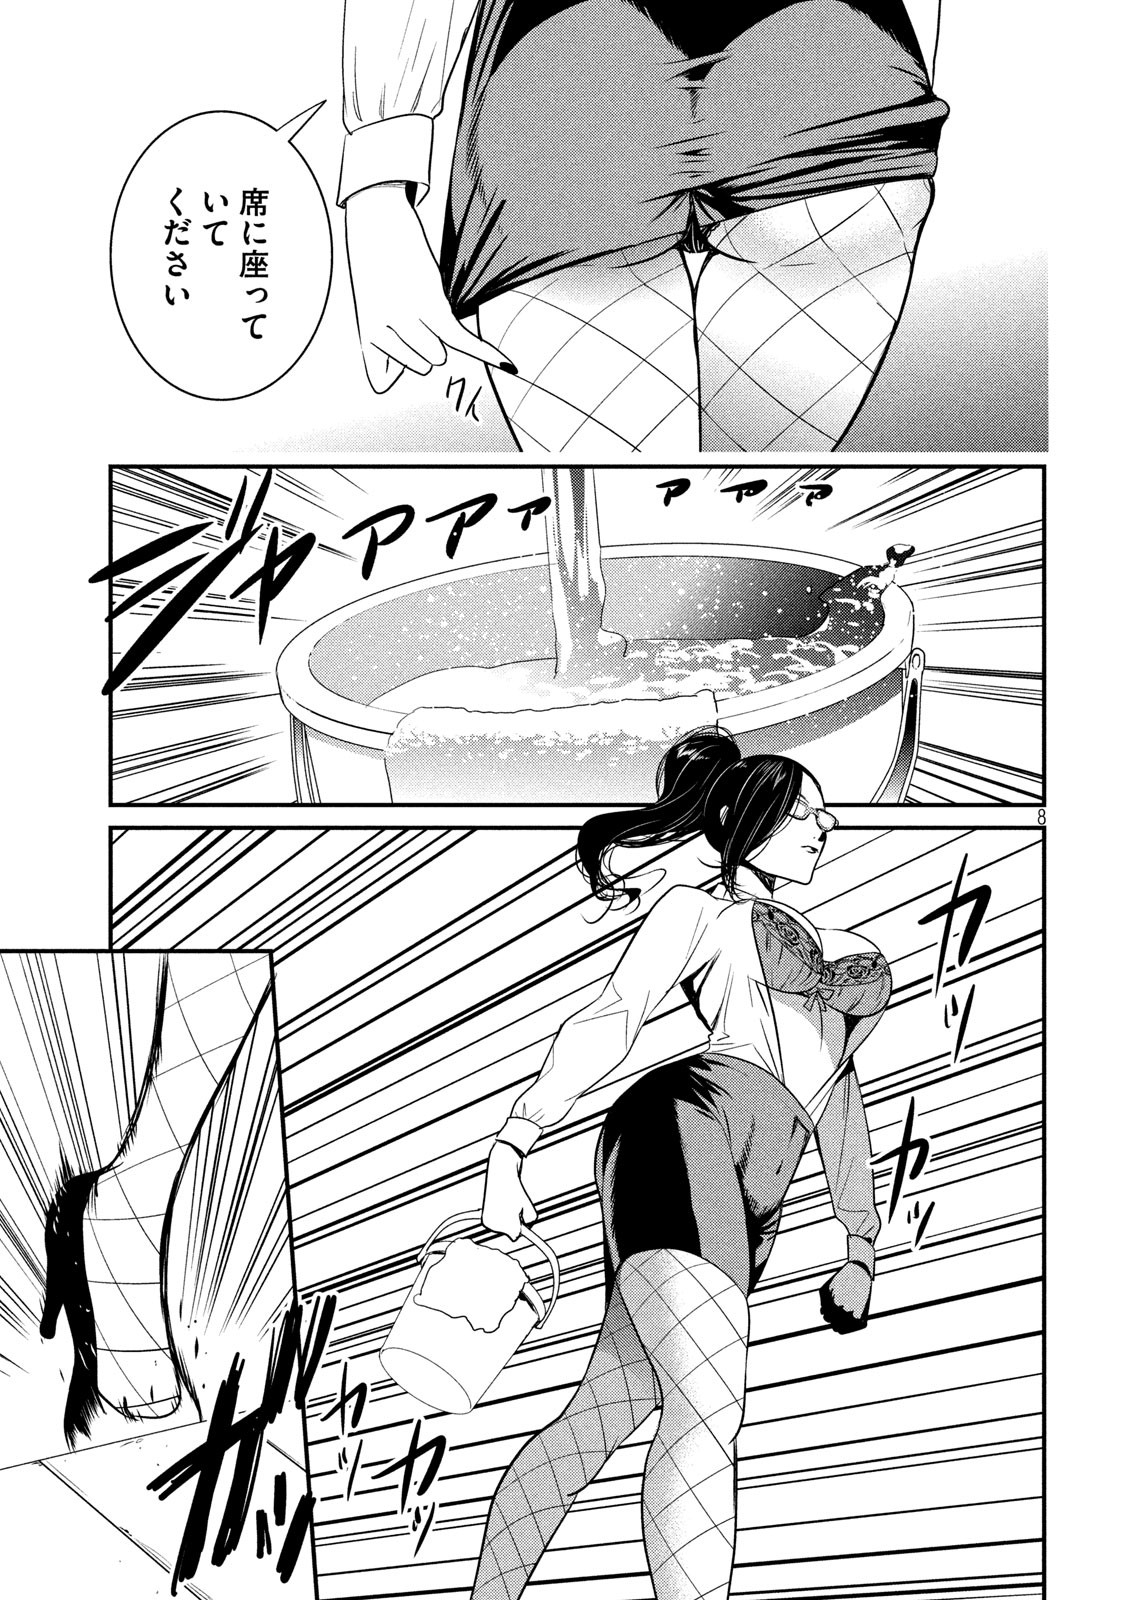 Eigo ×× Sensei - Chapter 1 - Page 8